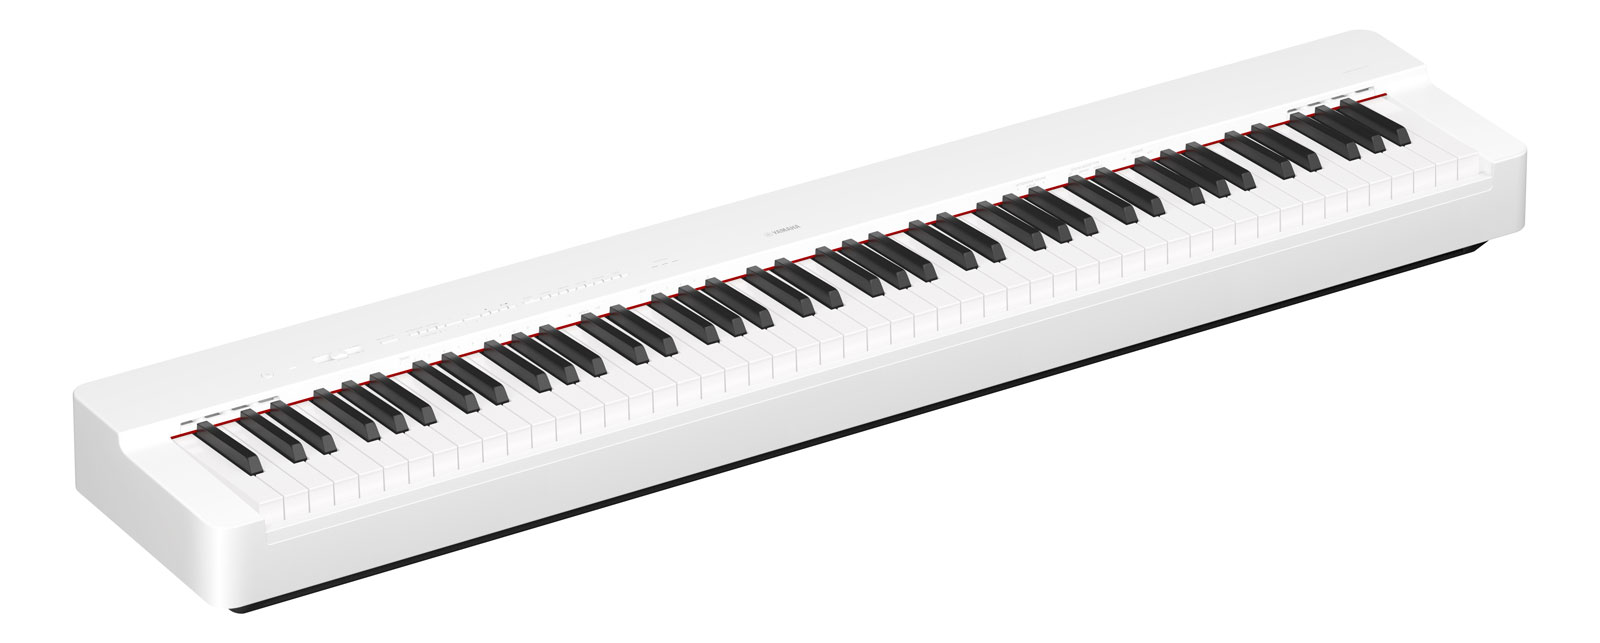 Yamaha P225 es un piano digital portátil que destaca por su gran la calidad, tamaño compacto, versatilidad y su capacidad para brindar una experiencia de interpretación auténtica,